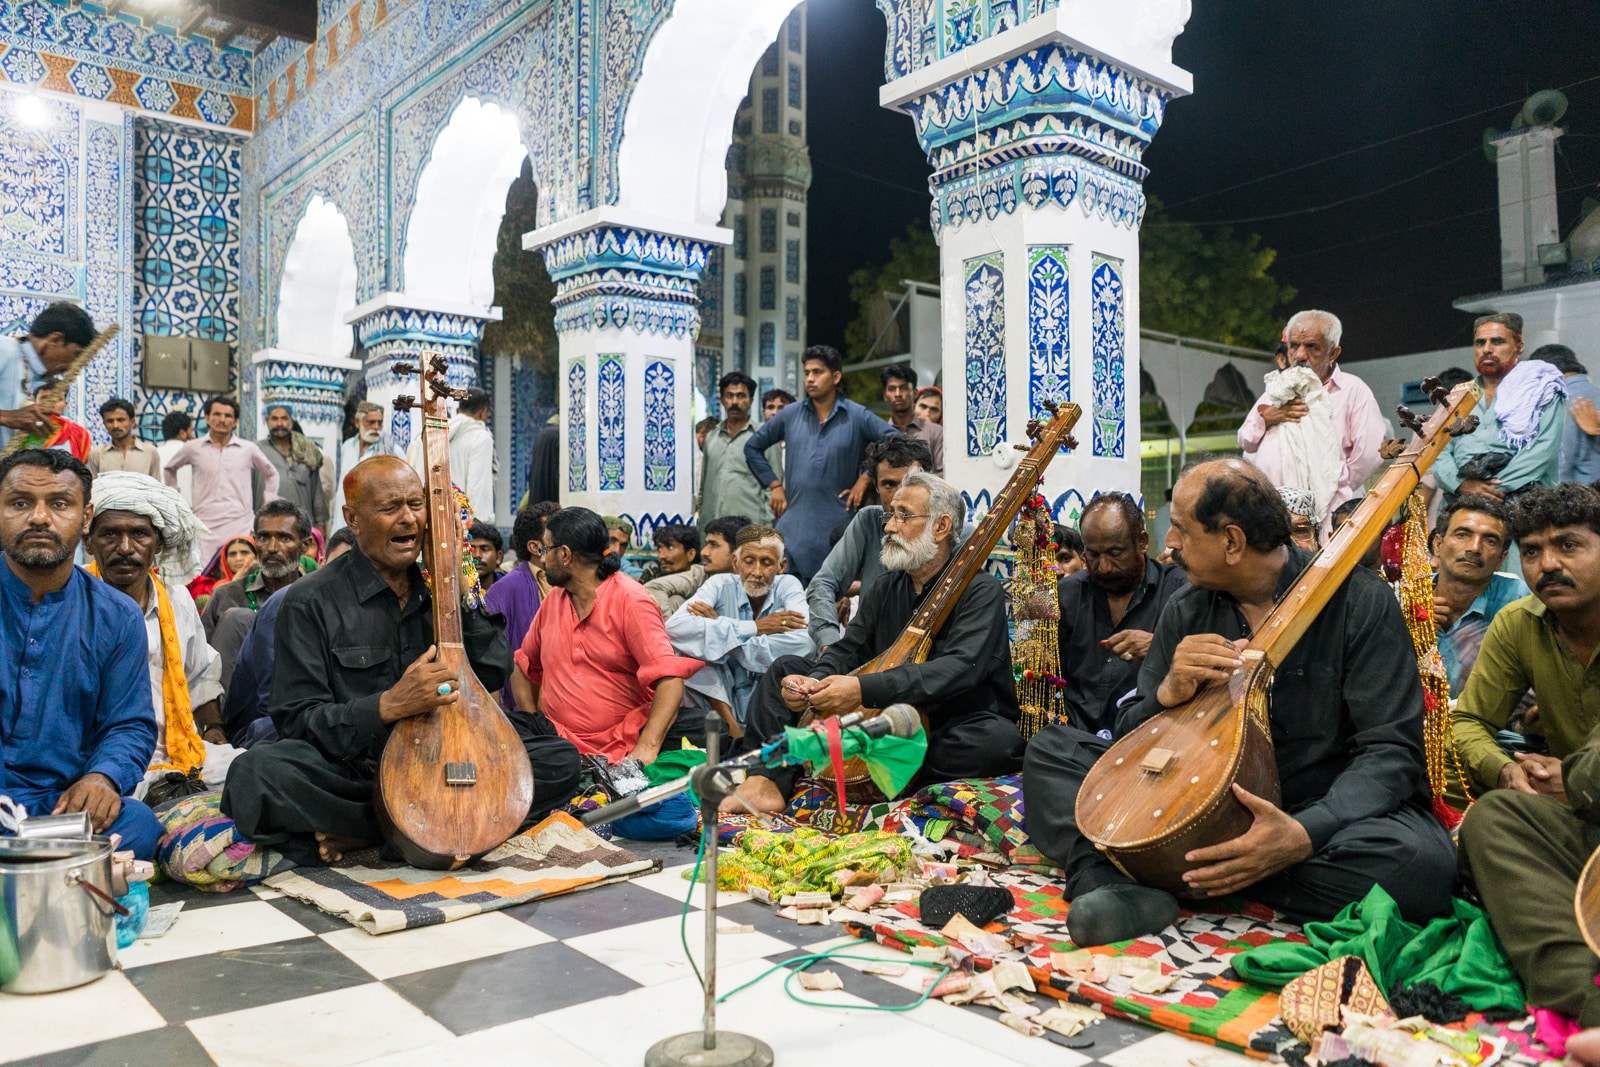 Musicians at the shrine of Bhittai in Bhit Shah, Sindh, Pakistan